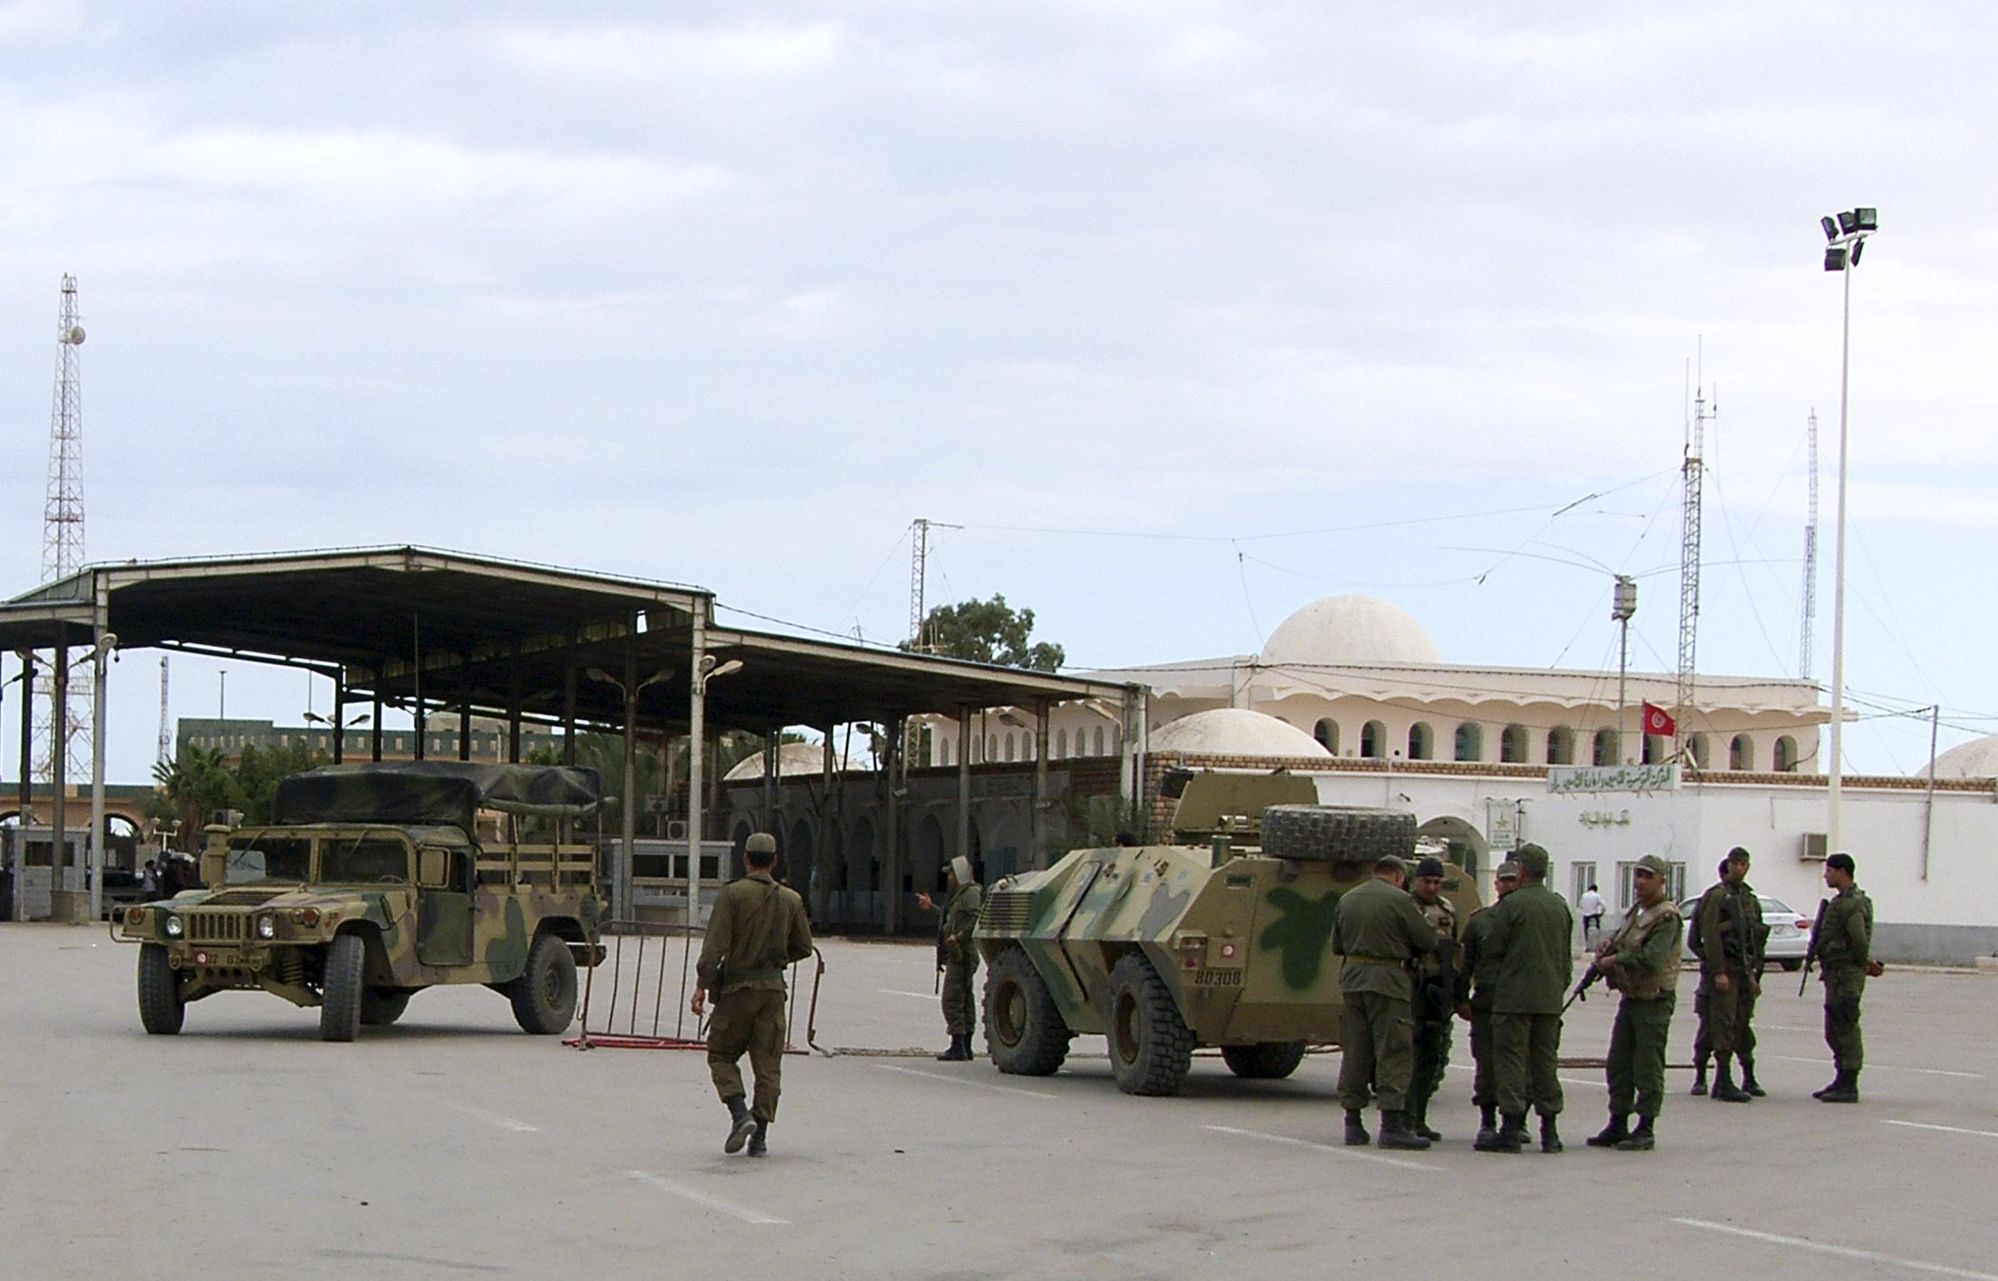 Tuniští vojáci nedaleko libyjské hranice, kde na ně v pondělí zaútočili extremisté.